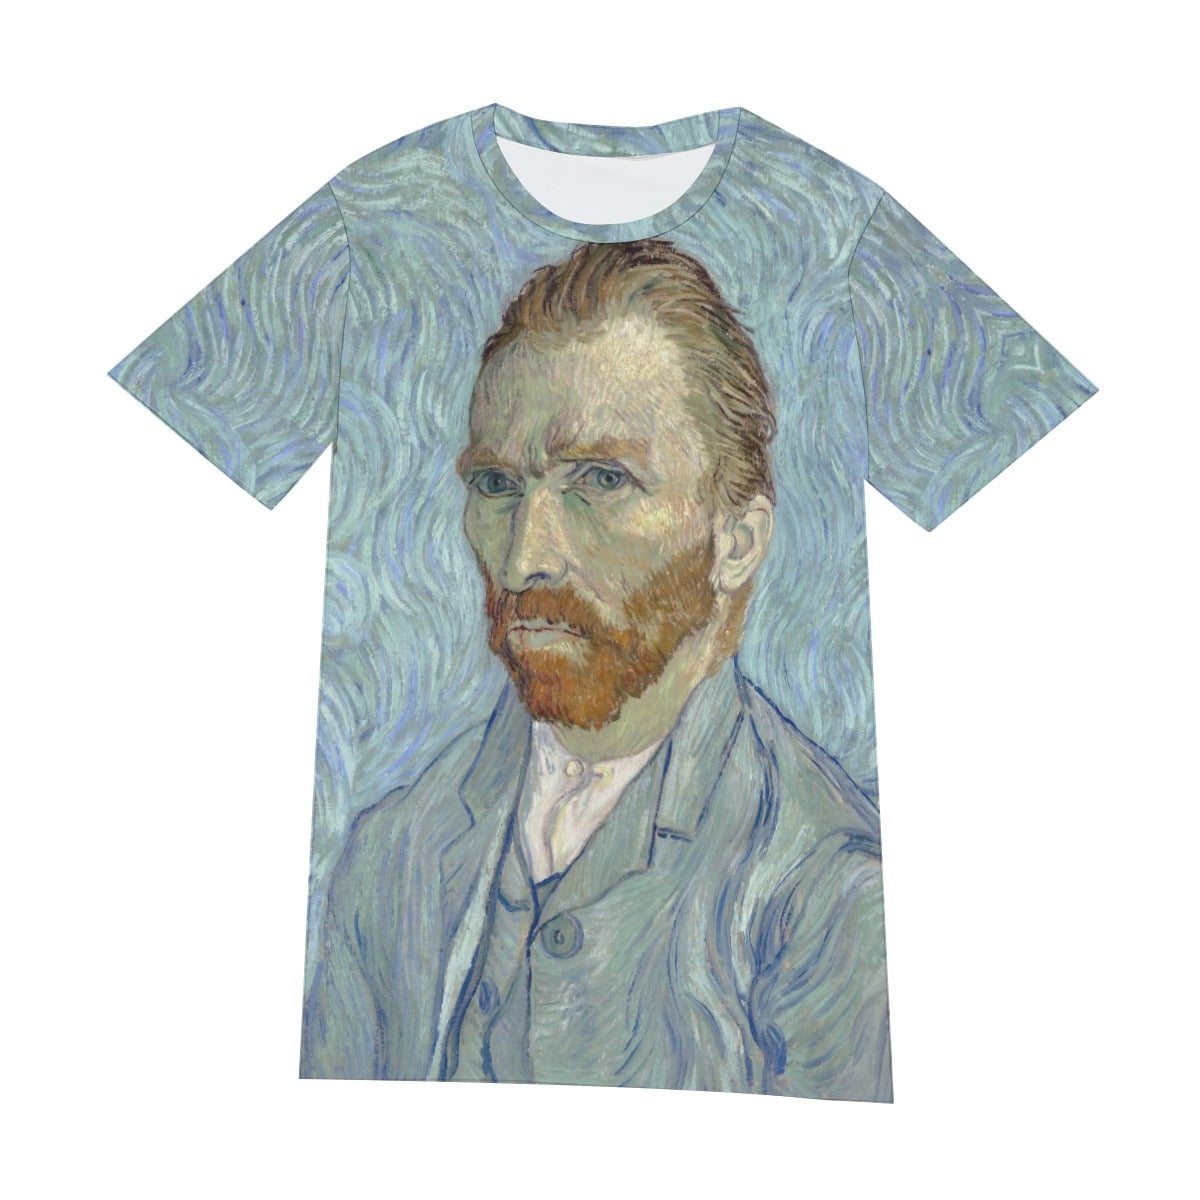 Vincent van Gogh’s Self-portrait T-Shirt